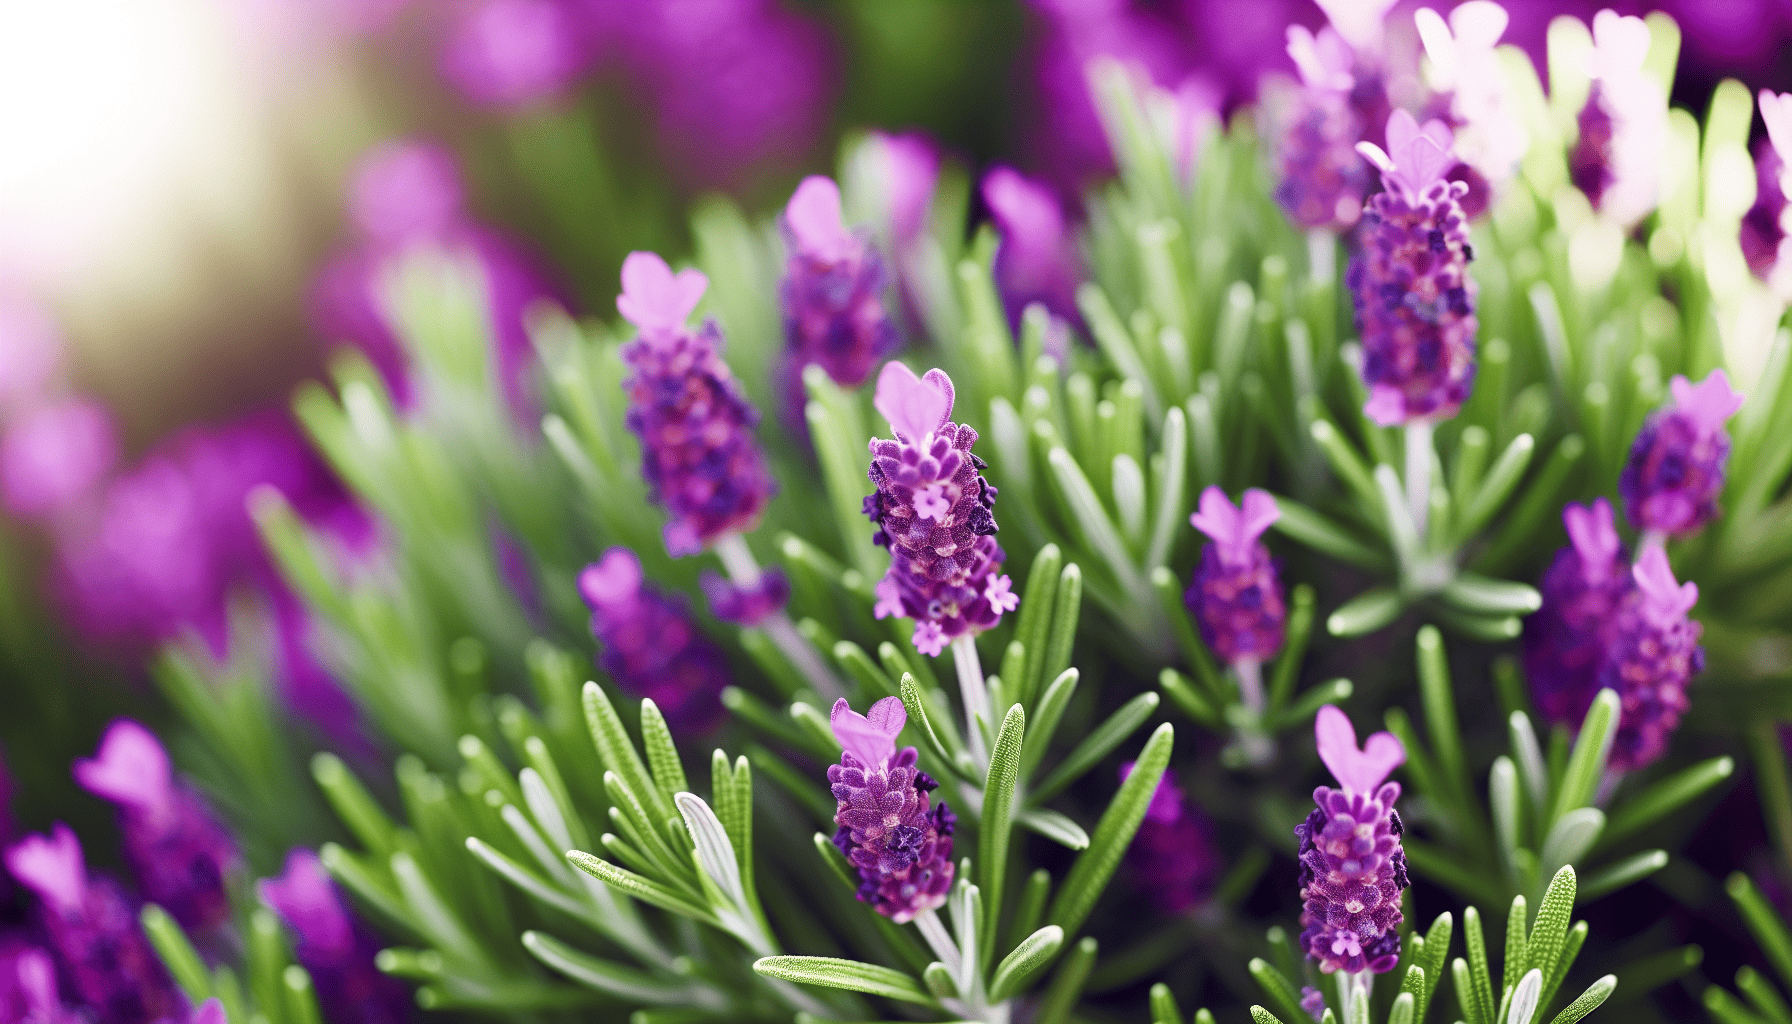 Lavender plant with vibrant purple flowers